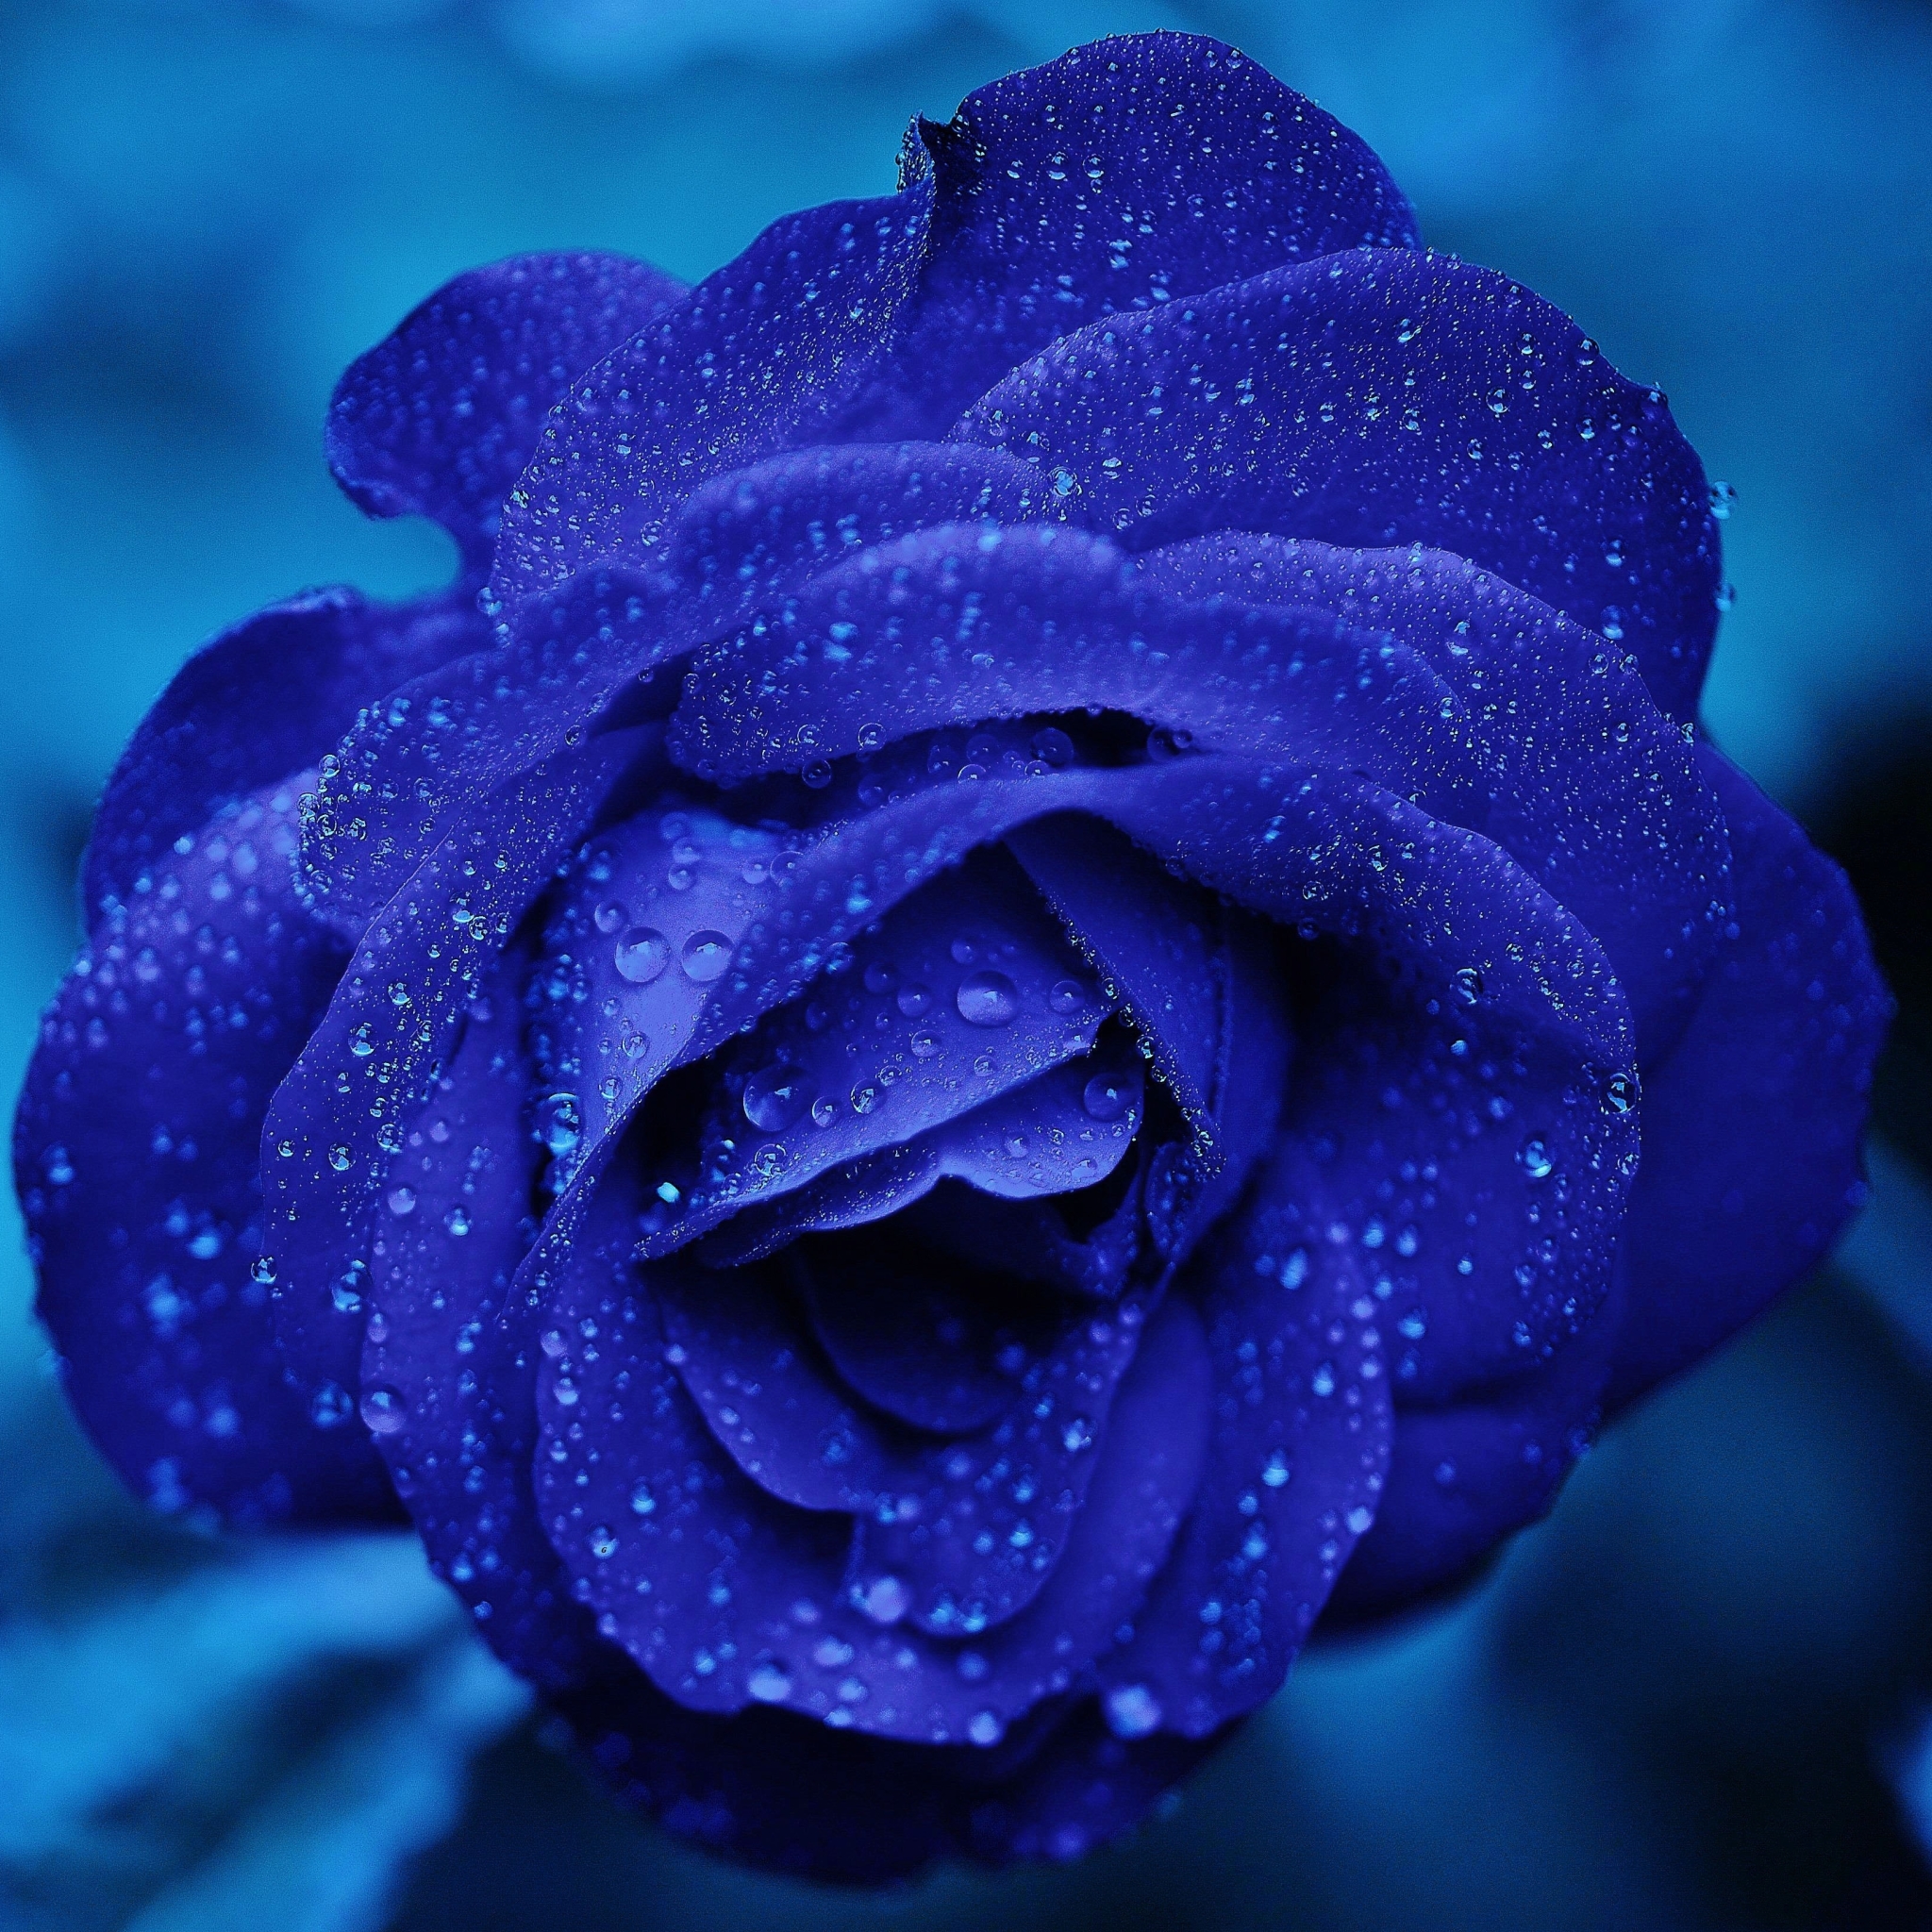 earth, rose, blue, flower, blue flower, water drop, blue rose, flowers